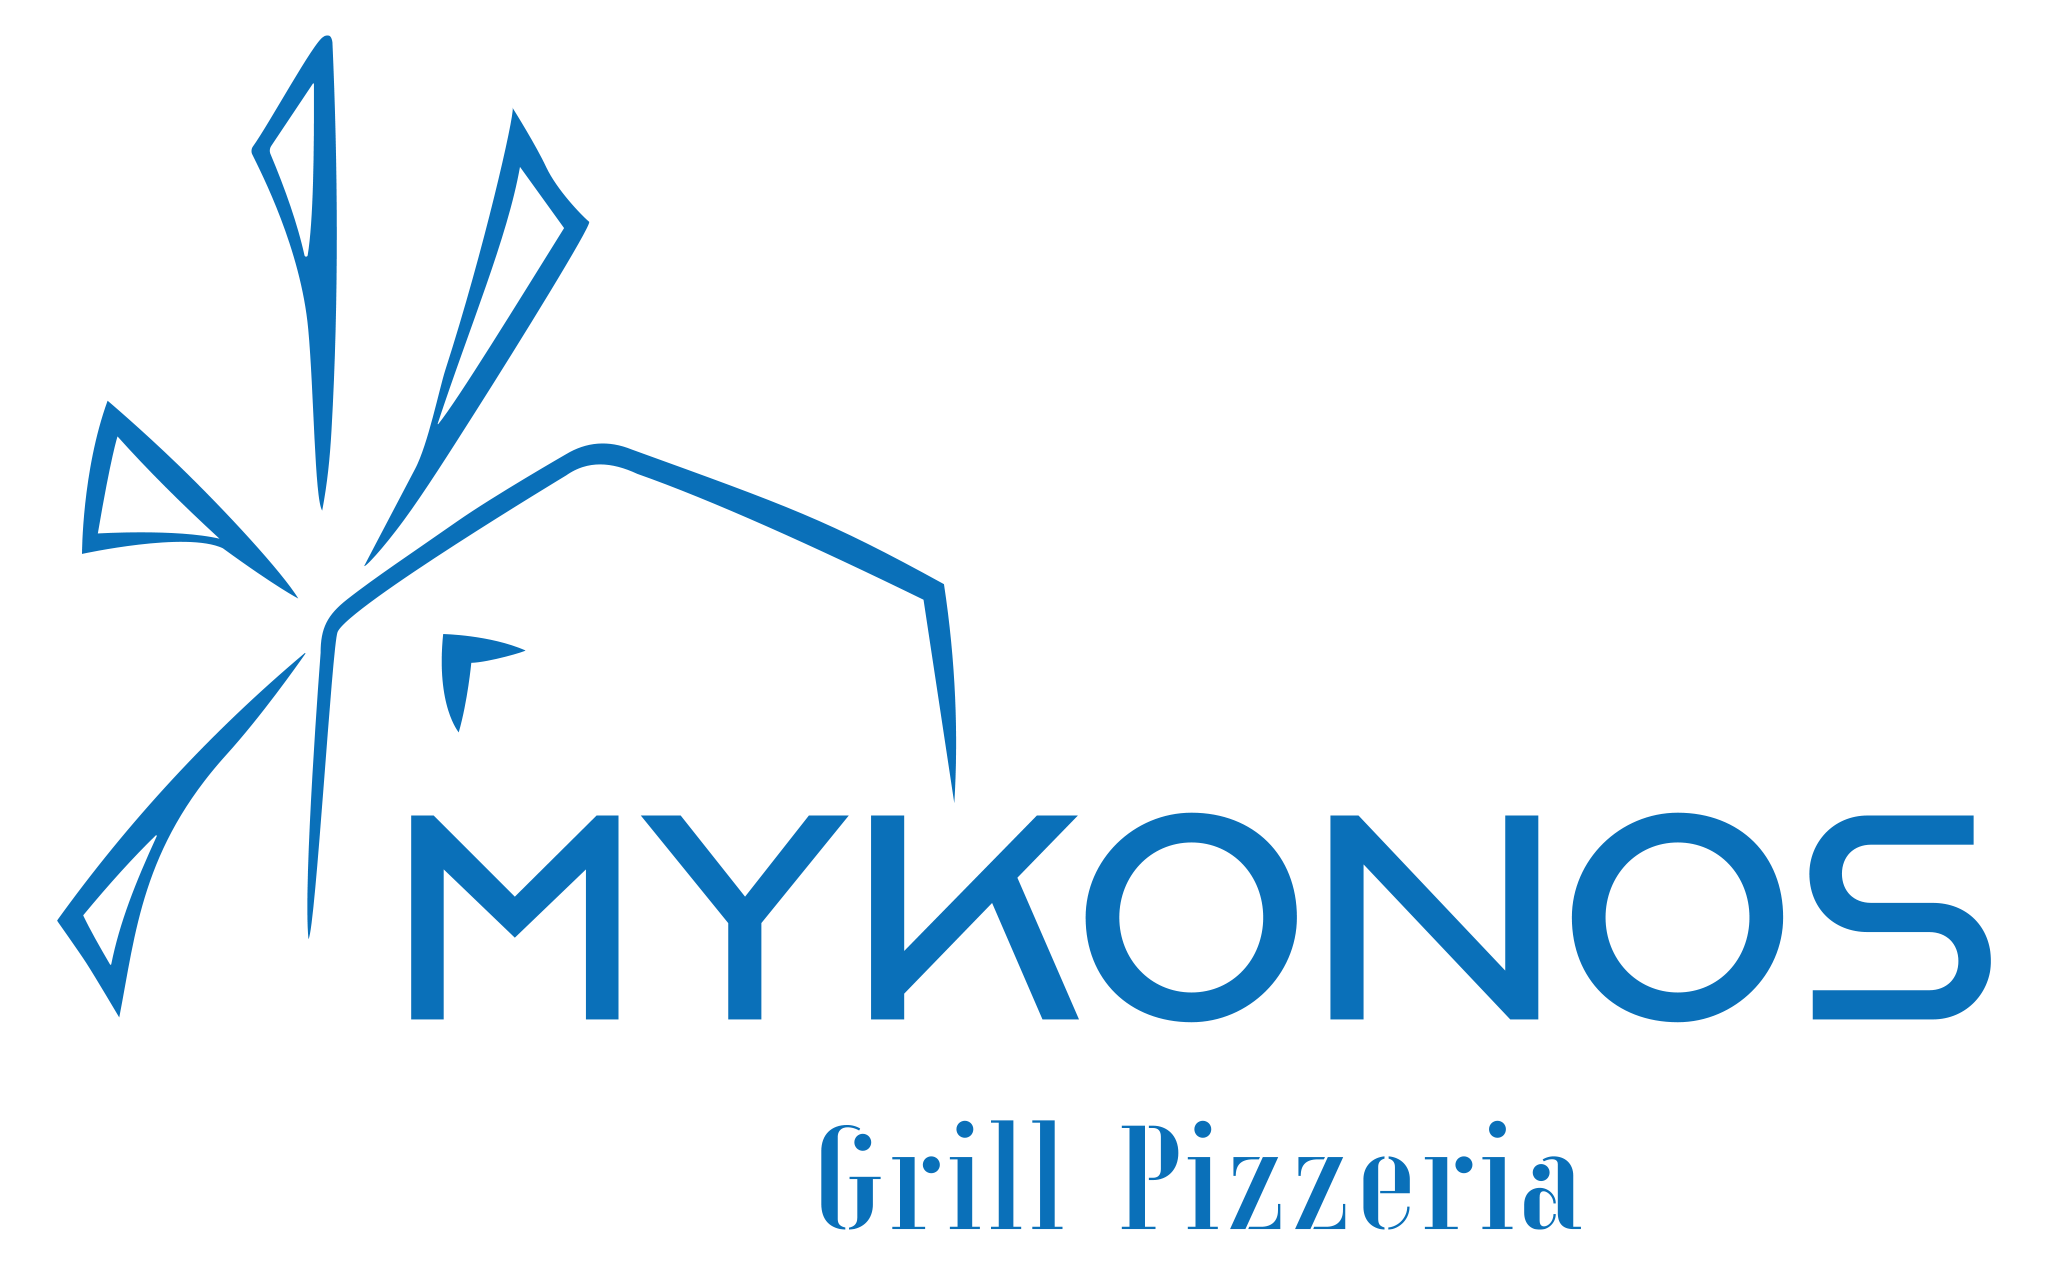 Mykonos Grill Pizzeria